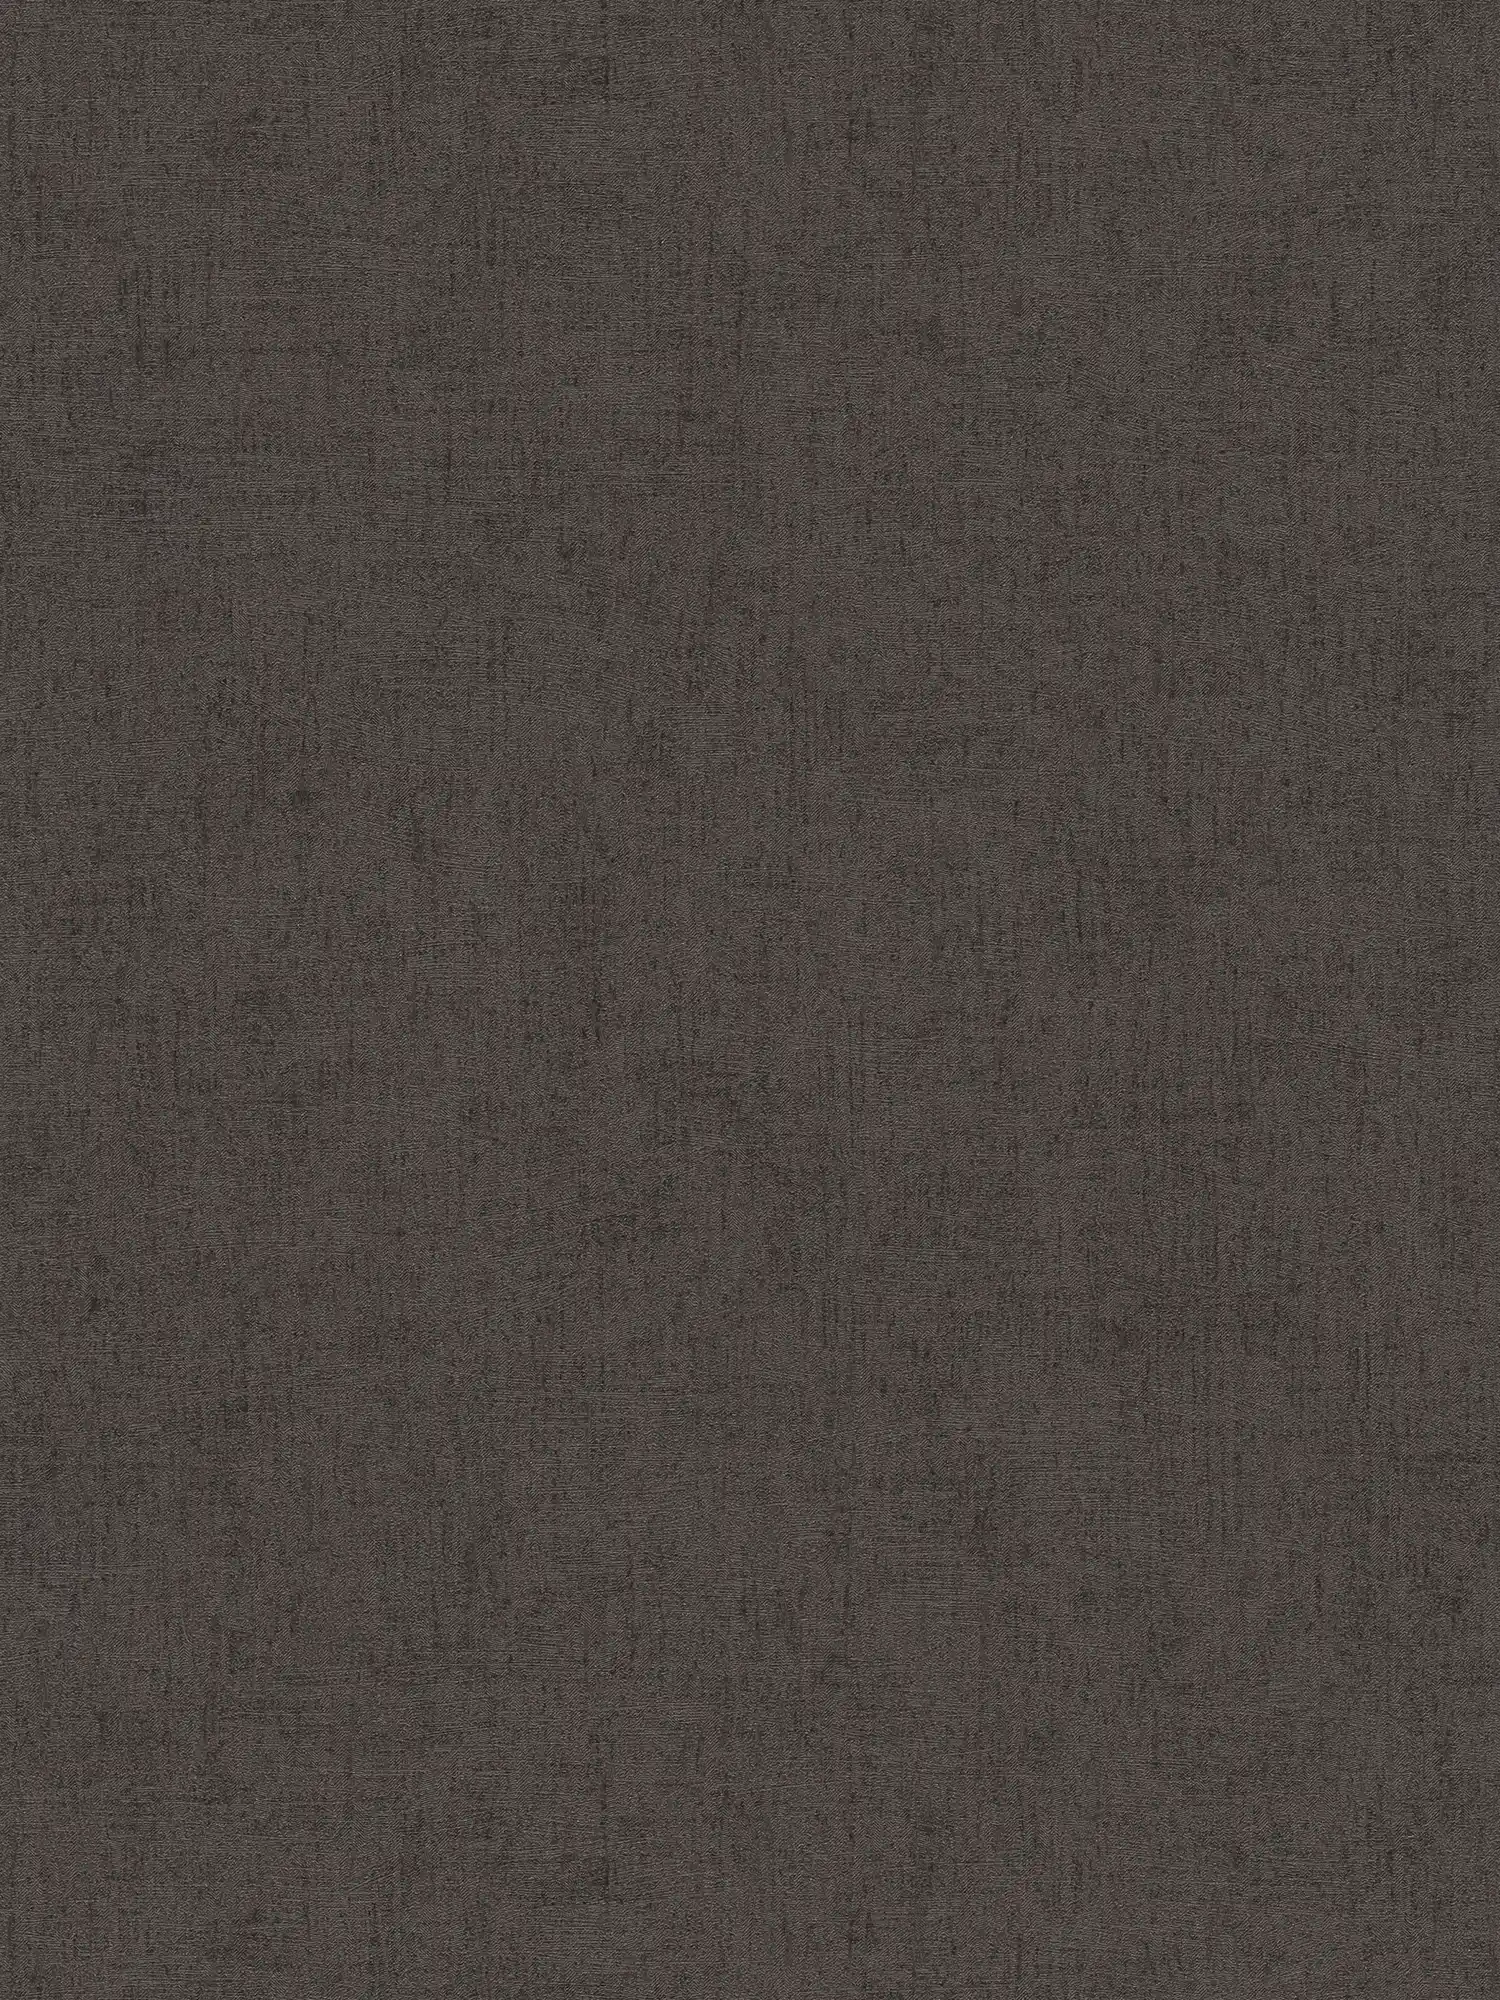 papel pintado marrón oscuro con brillo y efecto metálico - marrón, metálico
